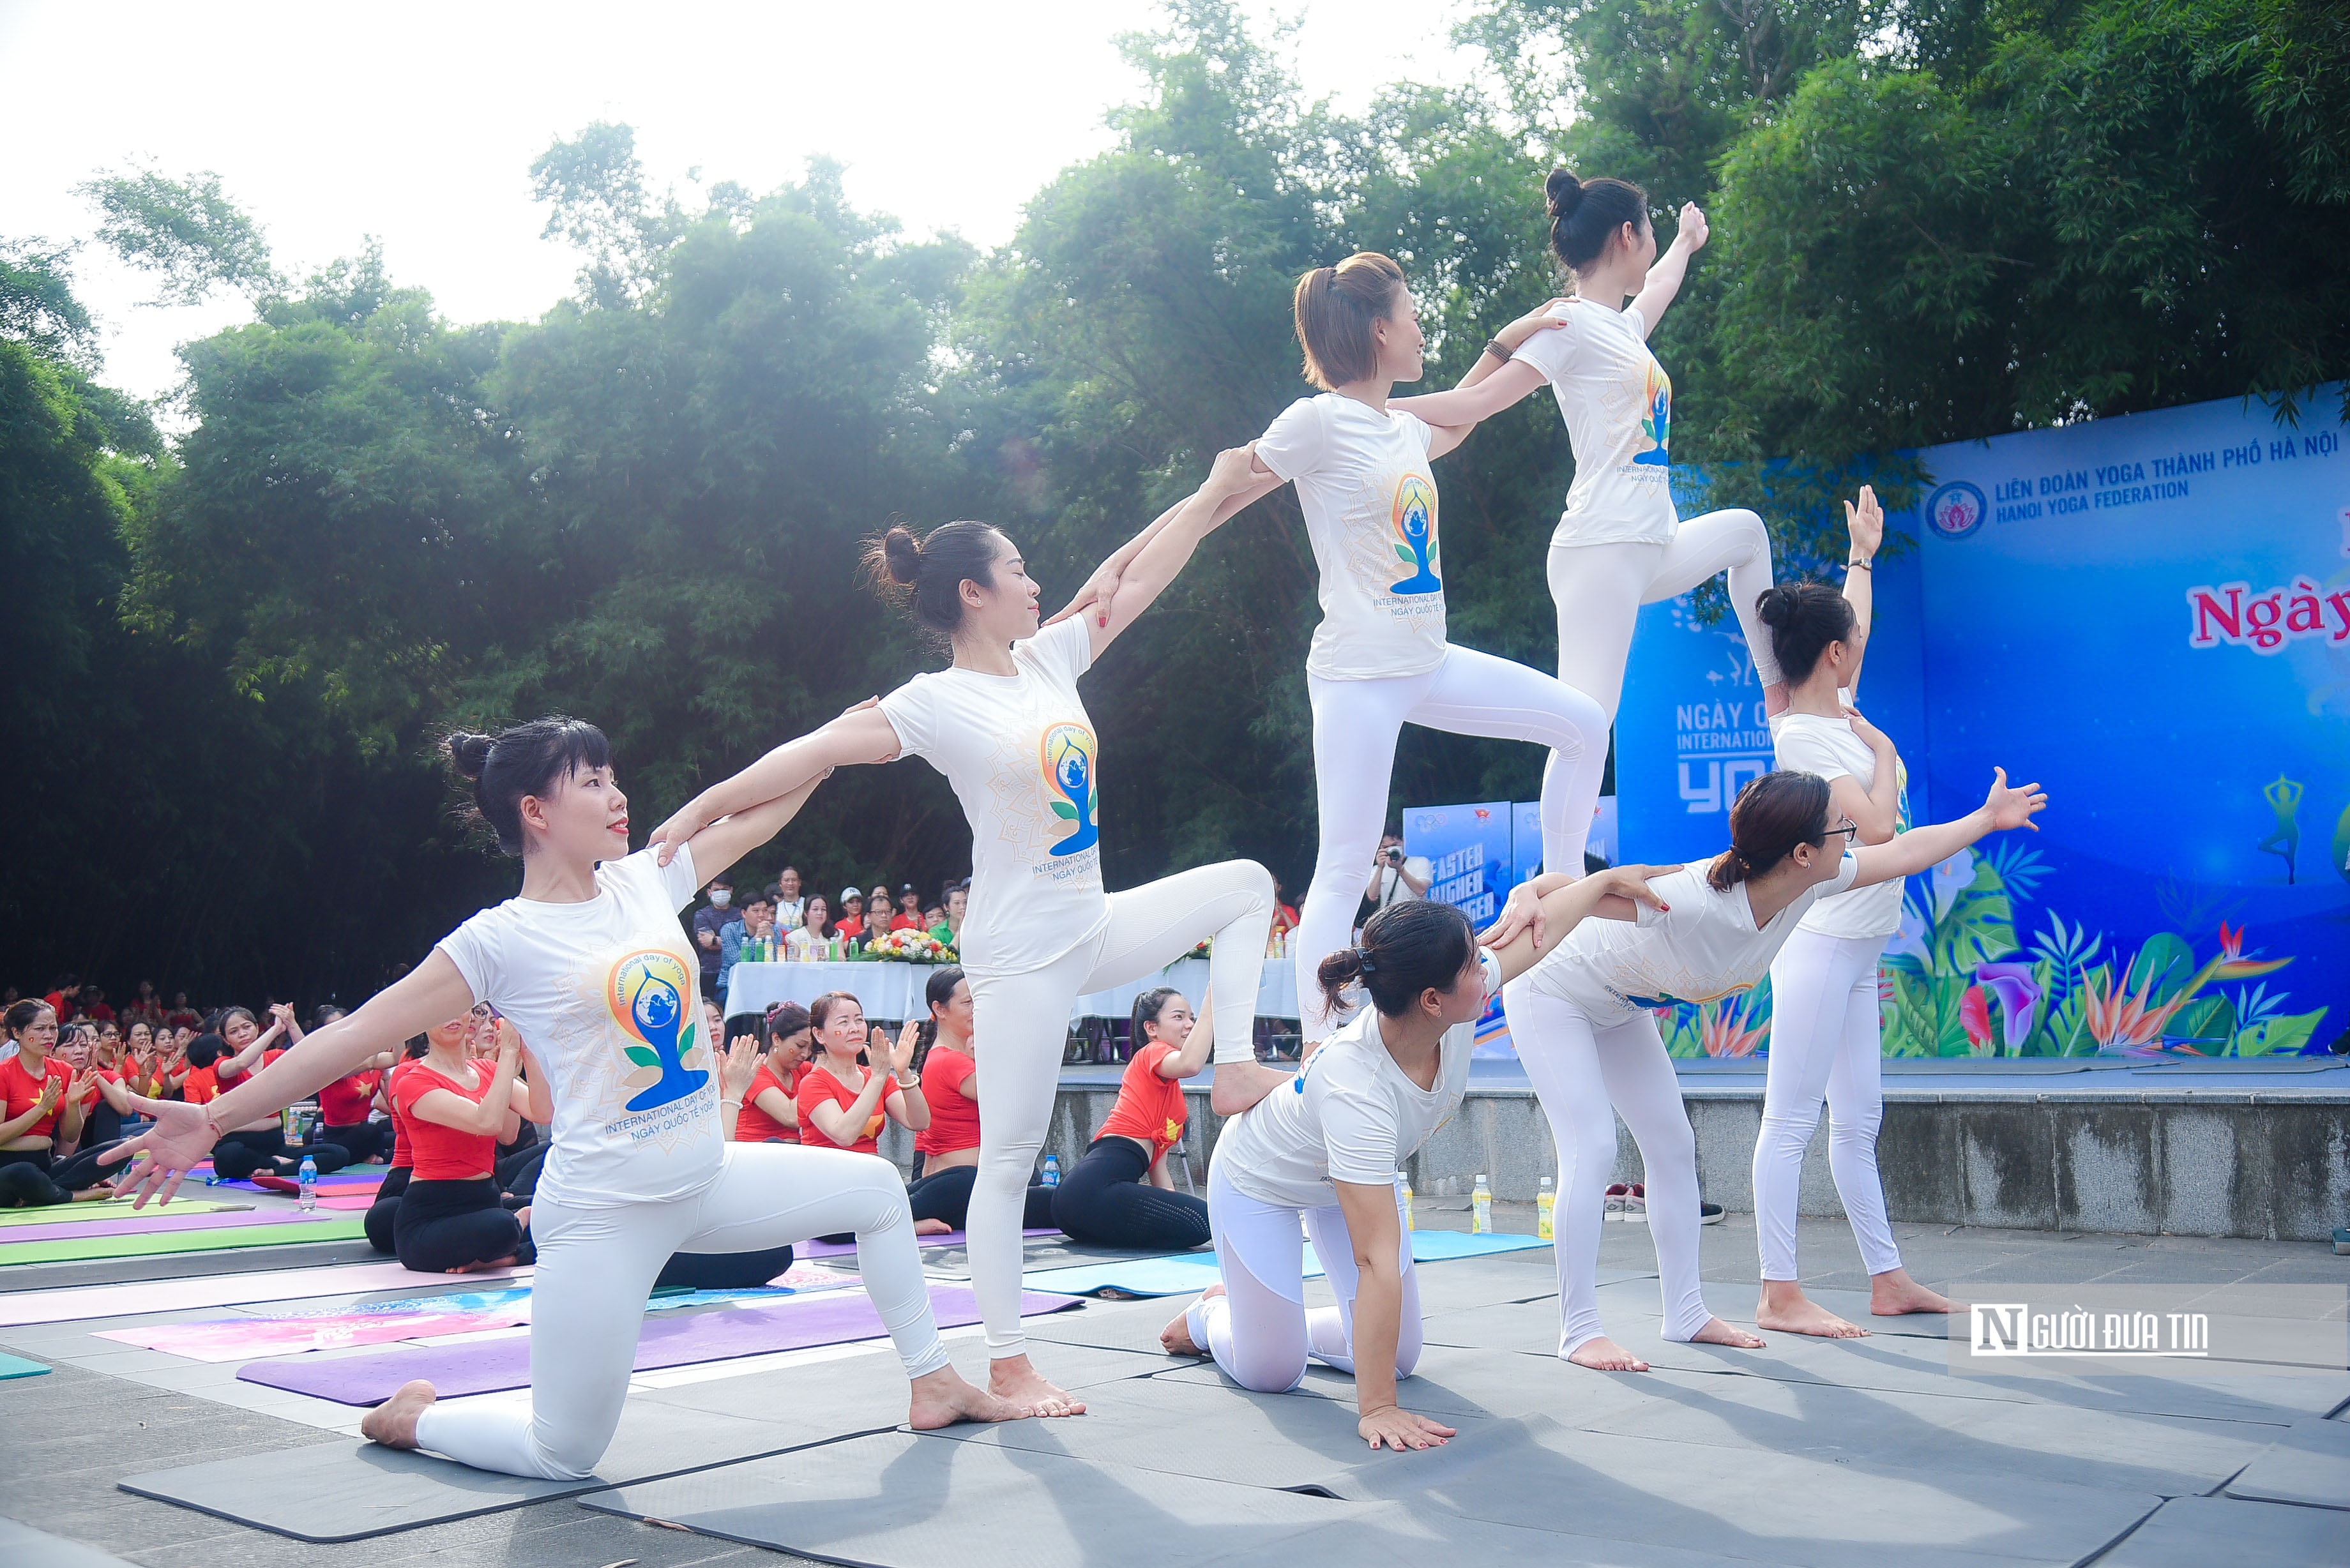 Dân sinh - Hà Nội: Hơn 1.000 người ở nhiều lứa tuổi tham gia đồng diễn Yoga (Hình 6).